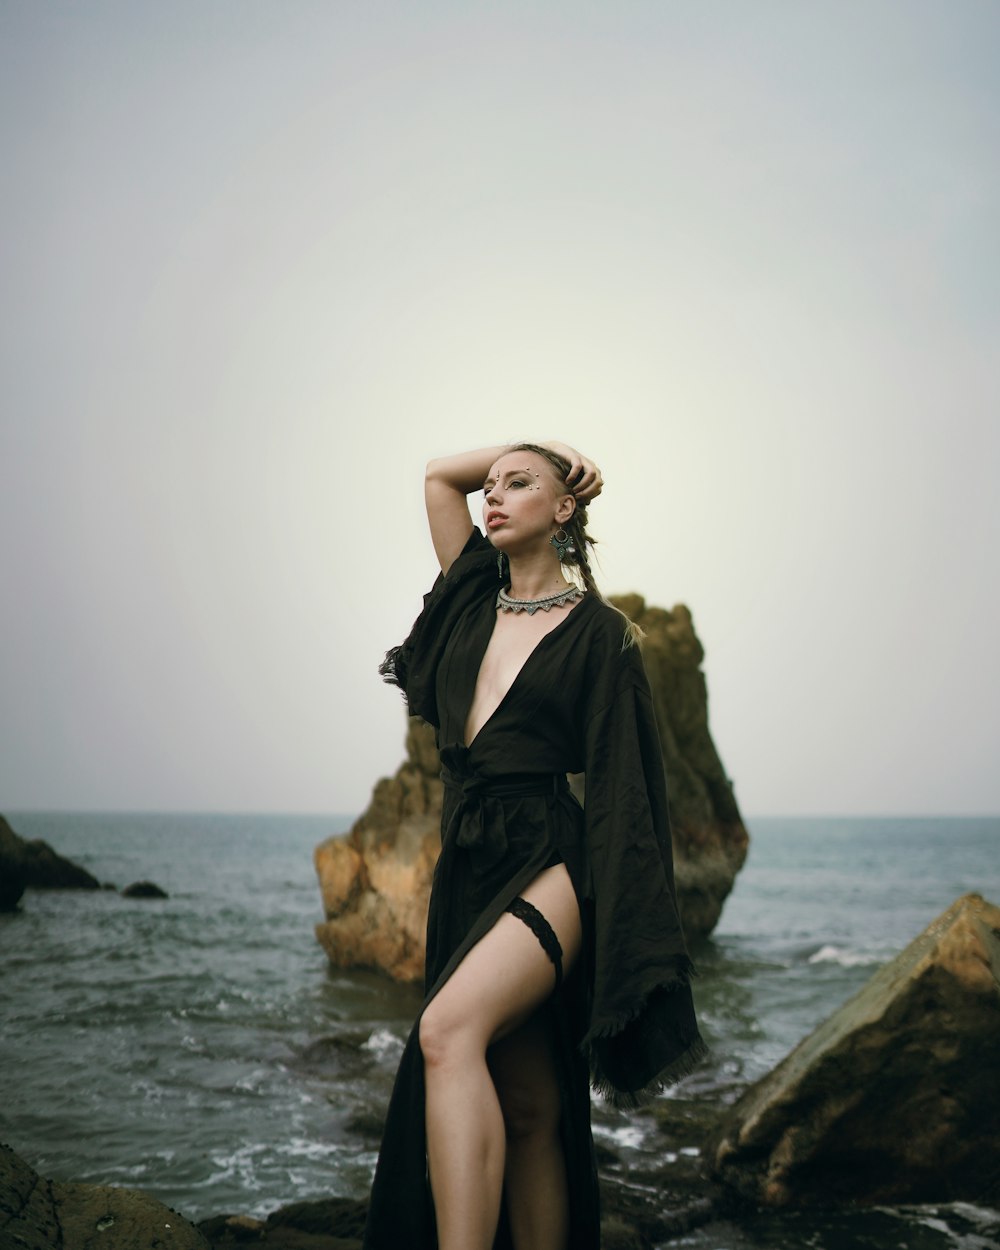 a woman in a black dress standing on rocks near the ocean